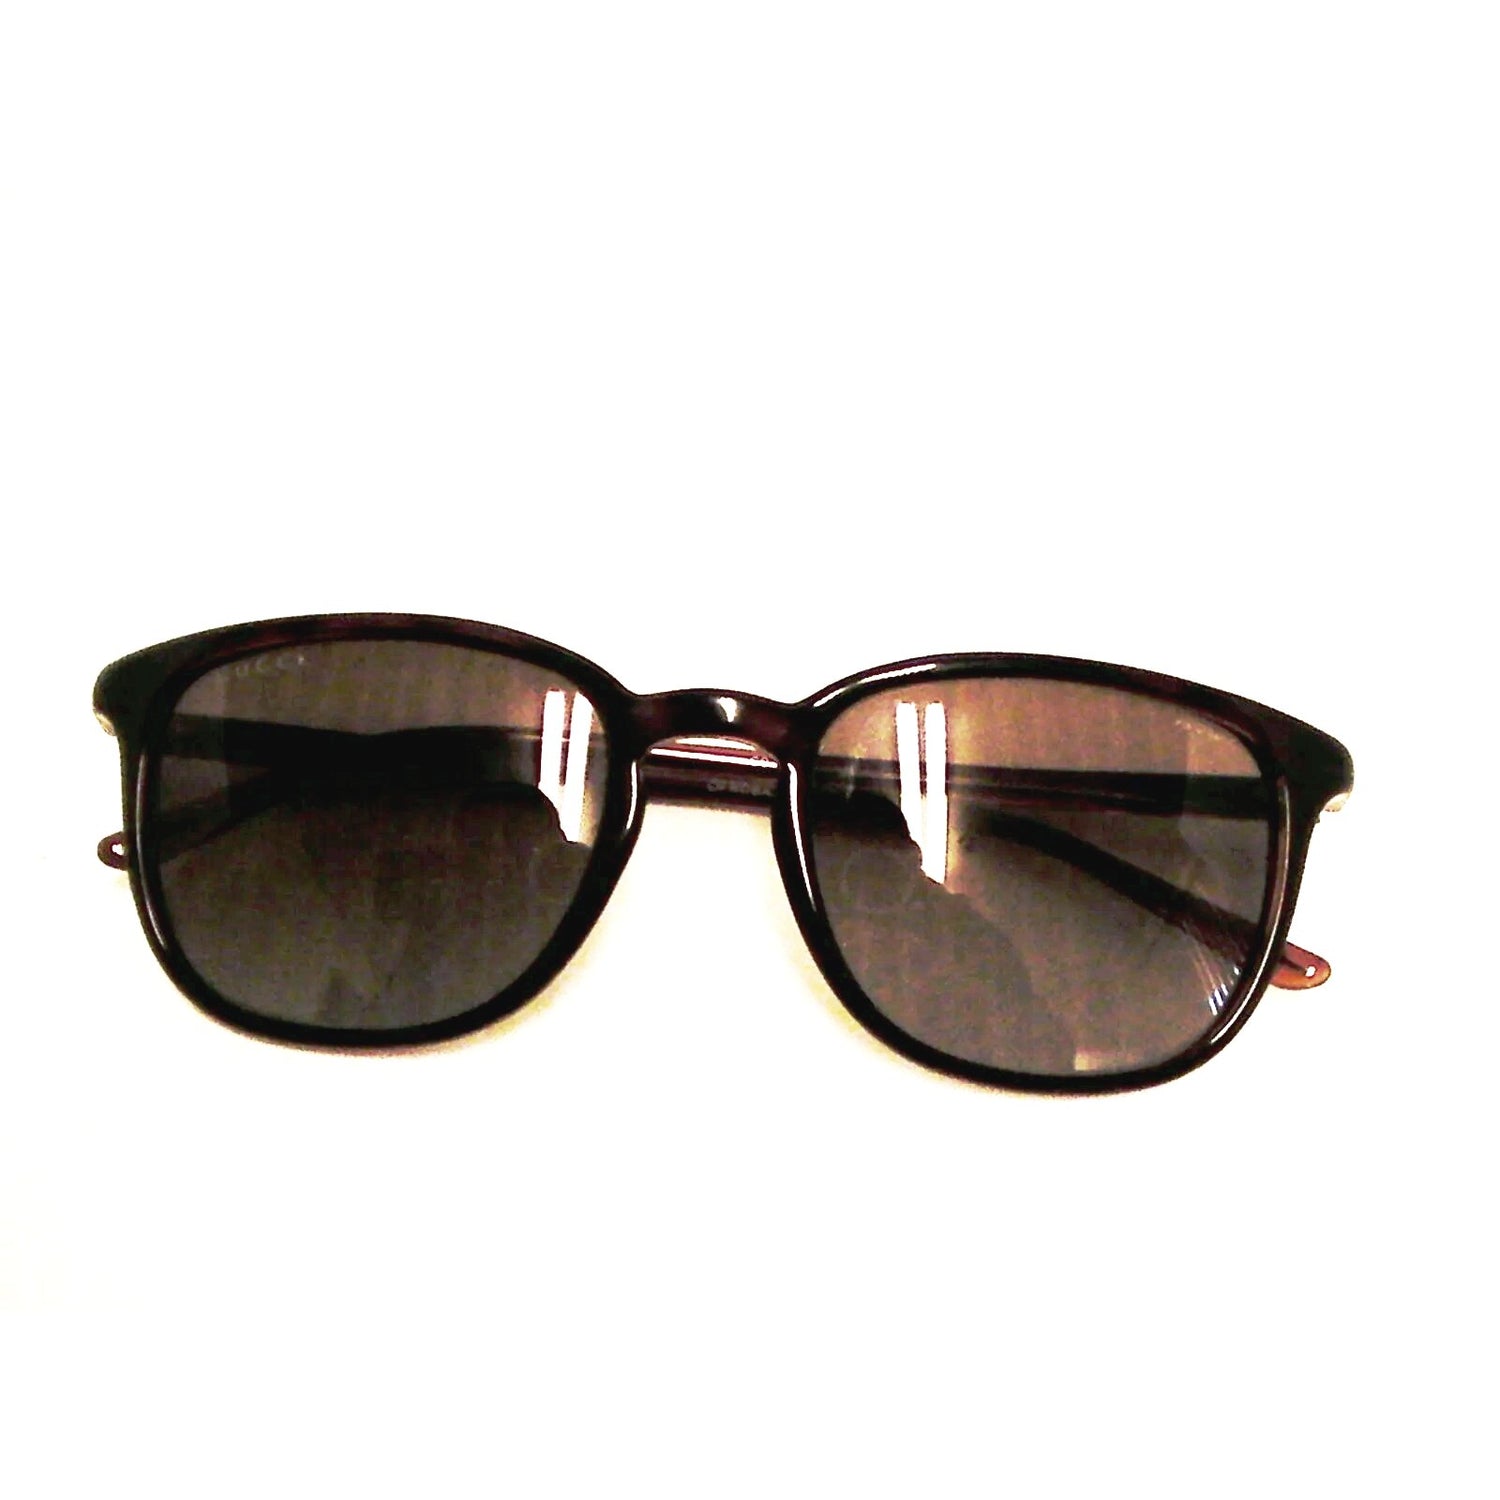 Gucci New Sunglasses GG 1067/s 2WOLA - Classic Fashion Deals